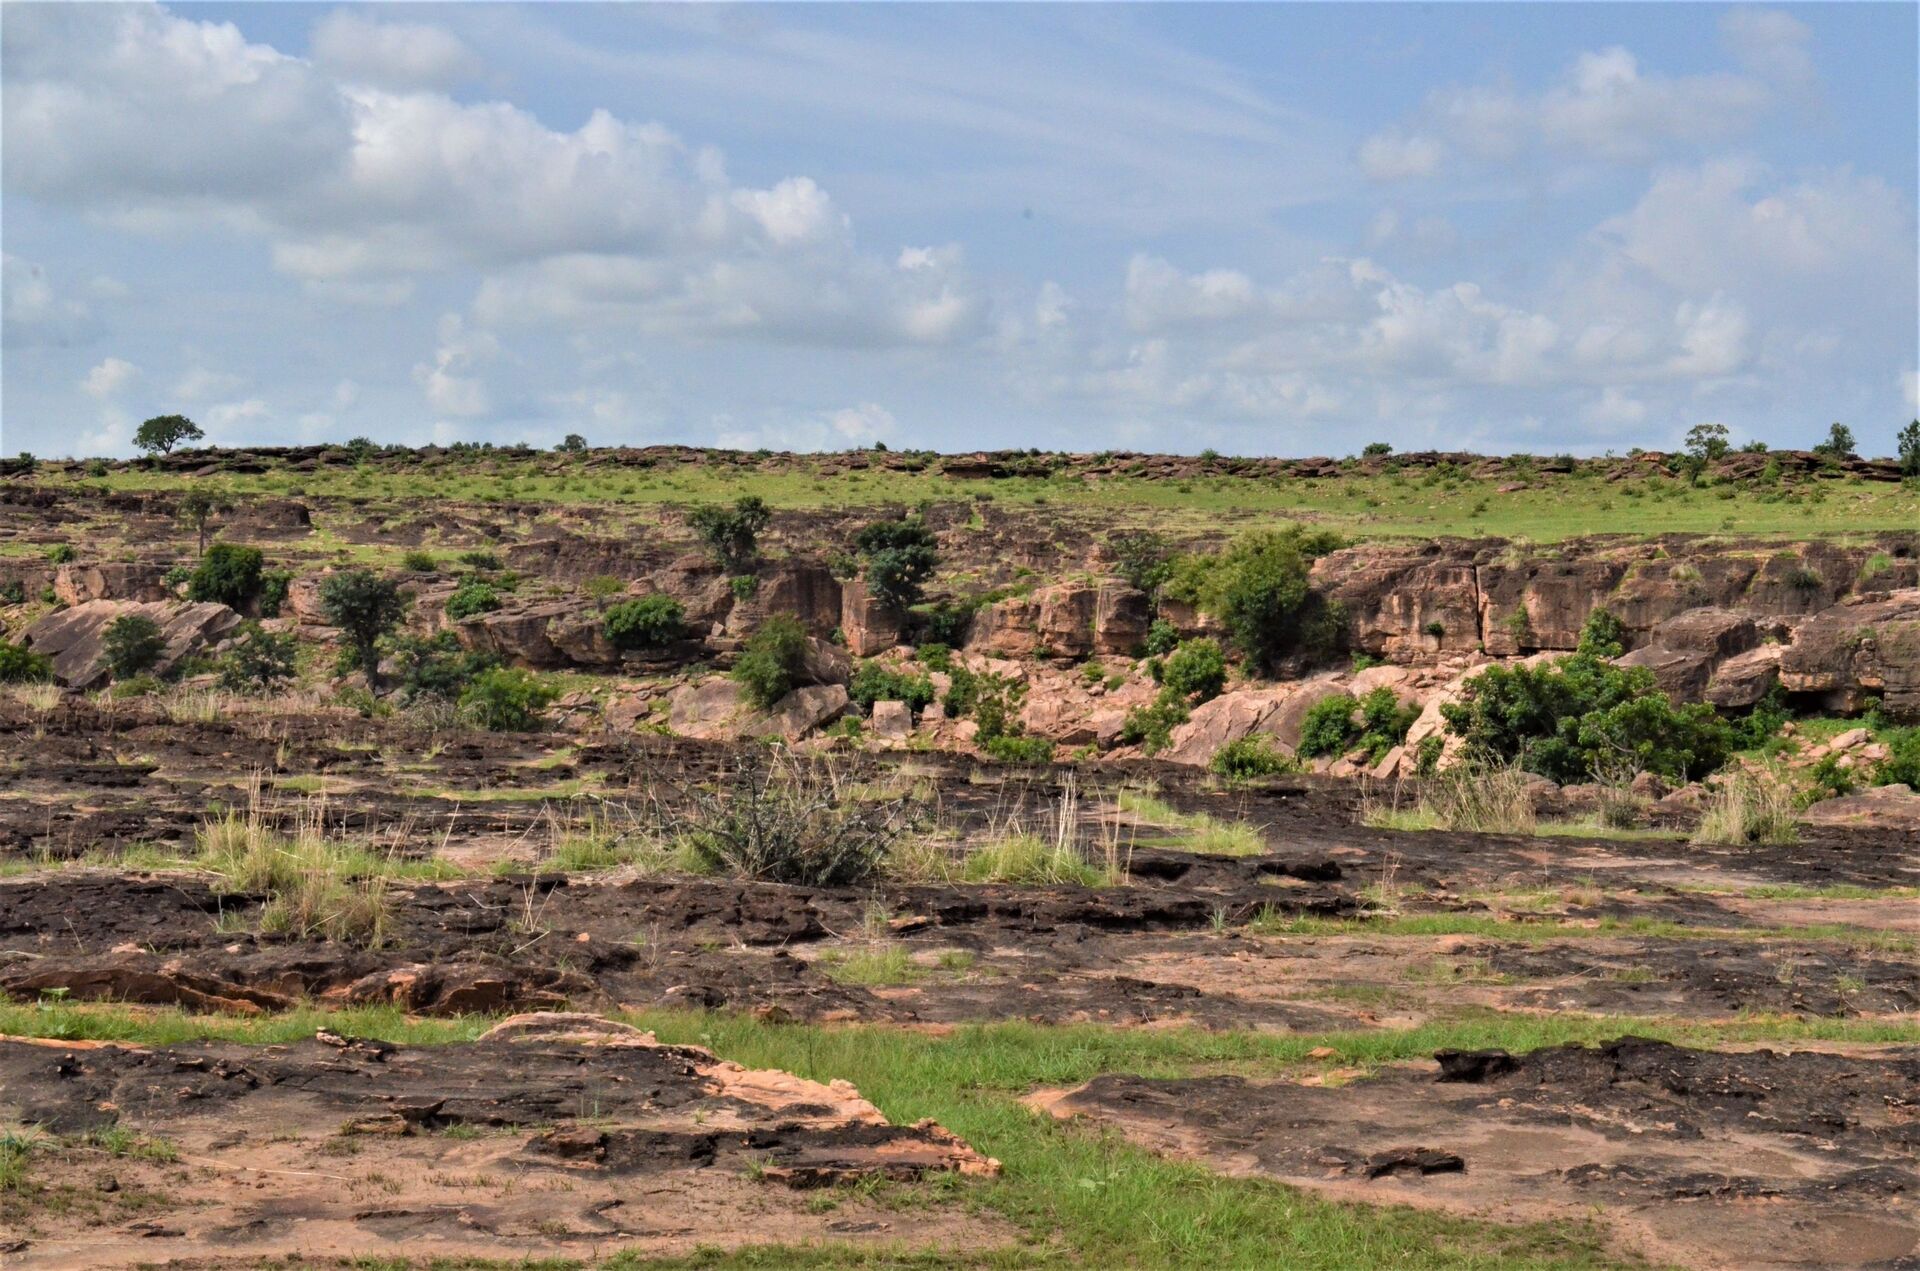 Vue de l'étendue du sol rocailleux autour des villages des monts Sidiki  - Sputnik Afrique, 1920, 21.09.2021